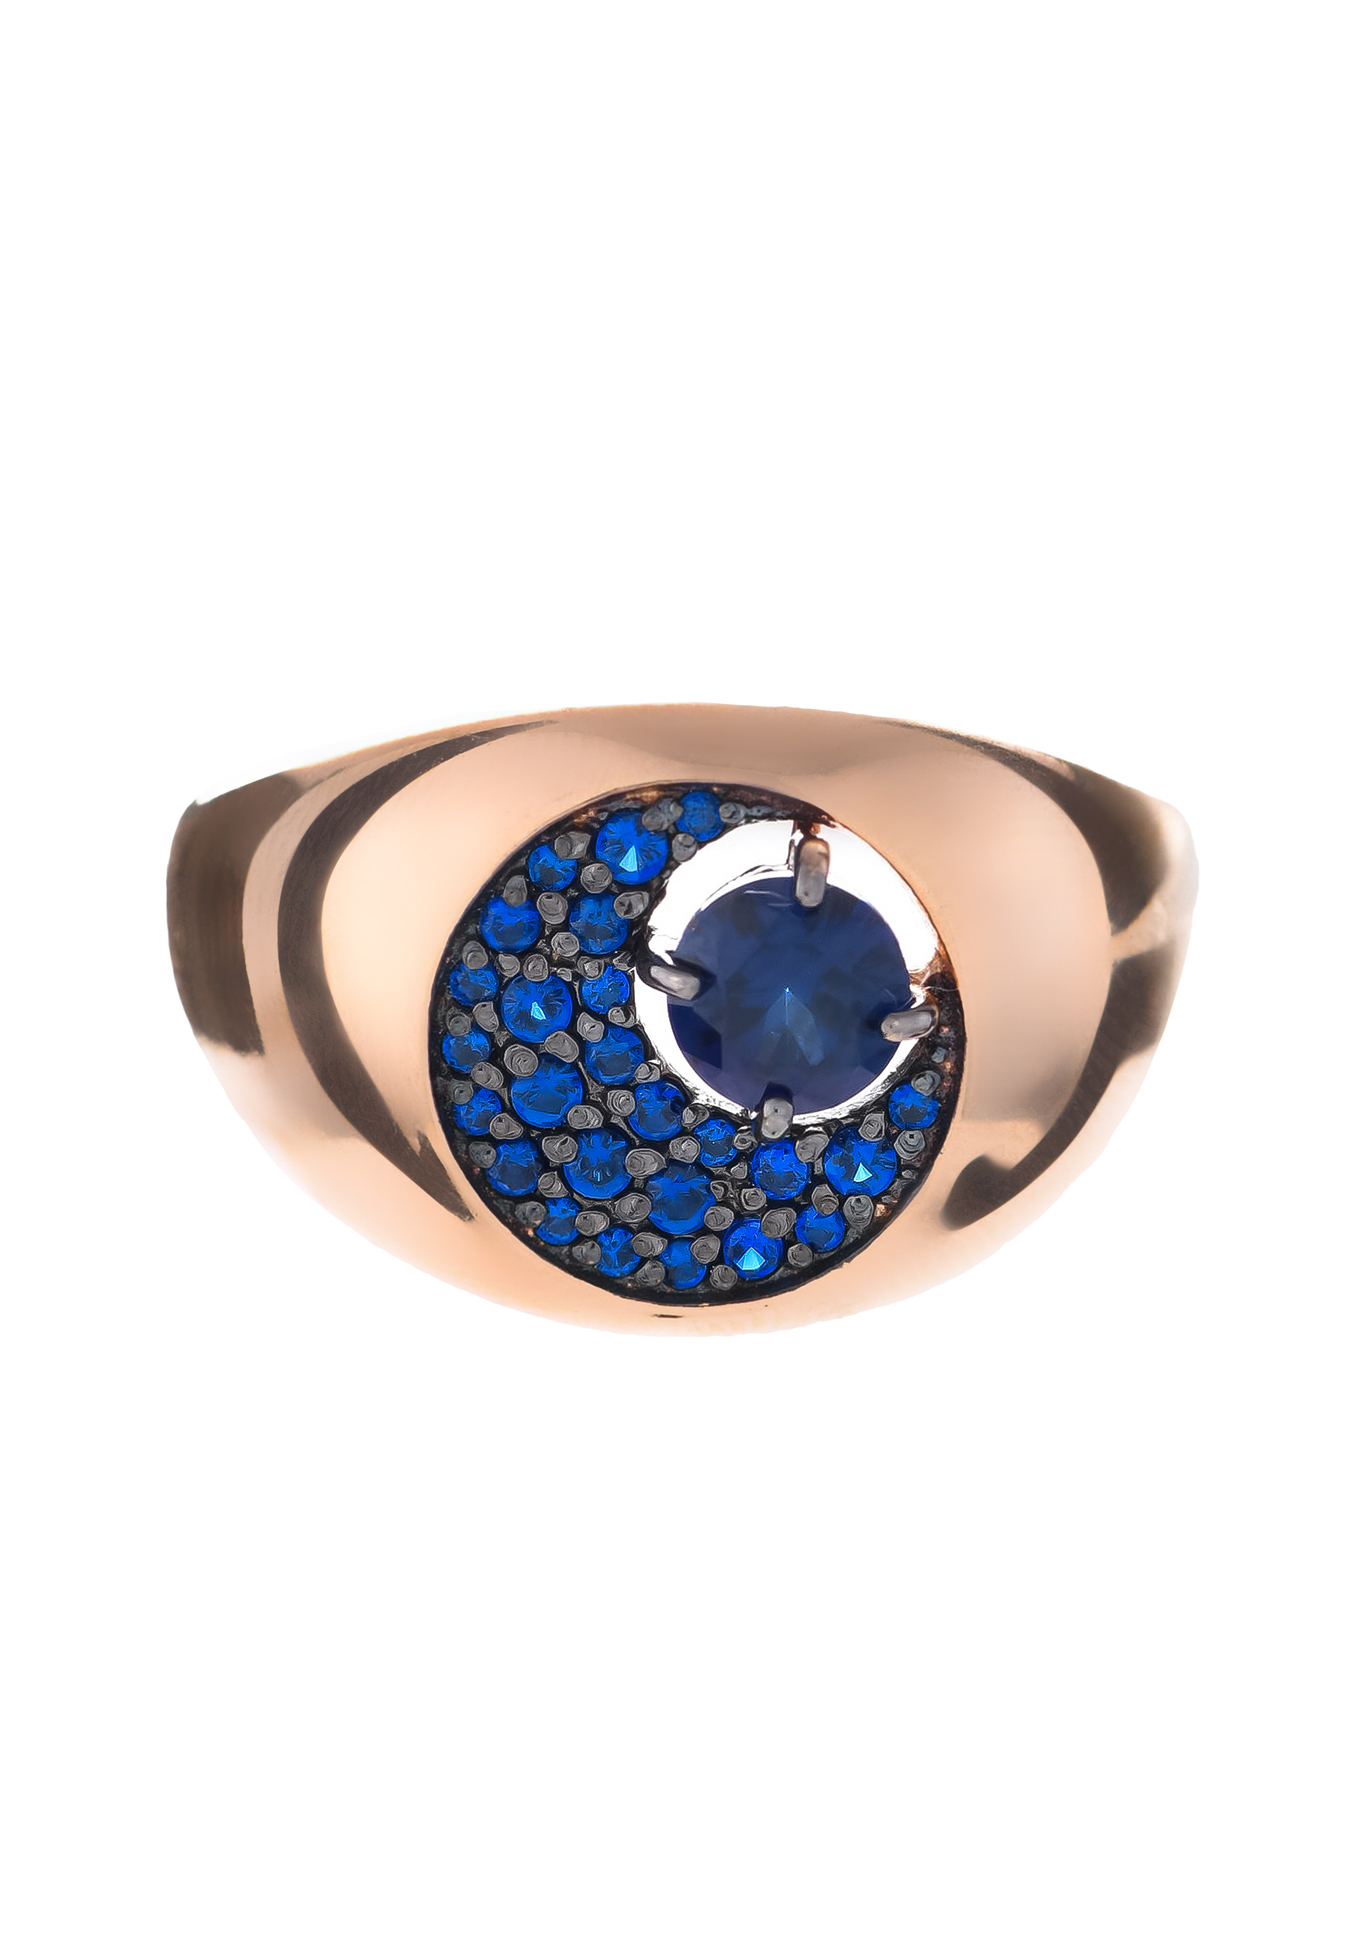 Серебряное кольцо «Мерцание ночи» Серебряный Дом, цвет синий, размер 17 перстень - фото 2